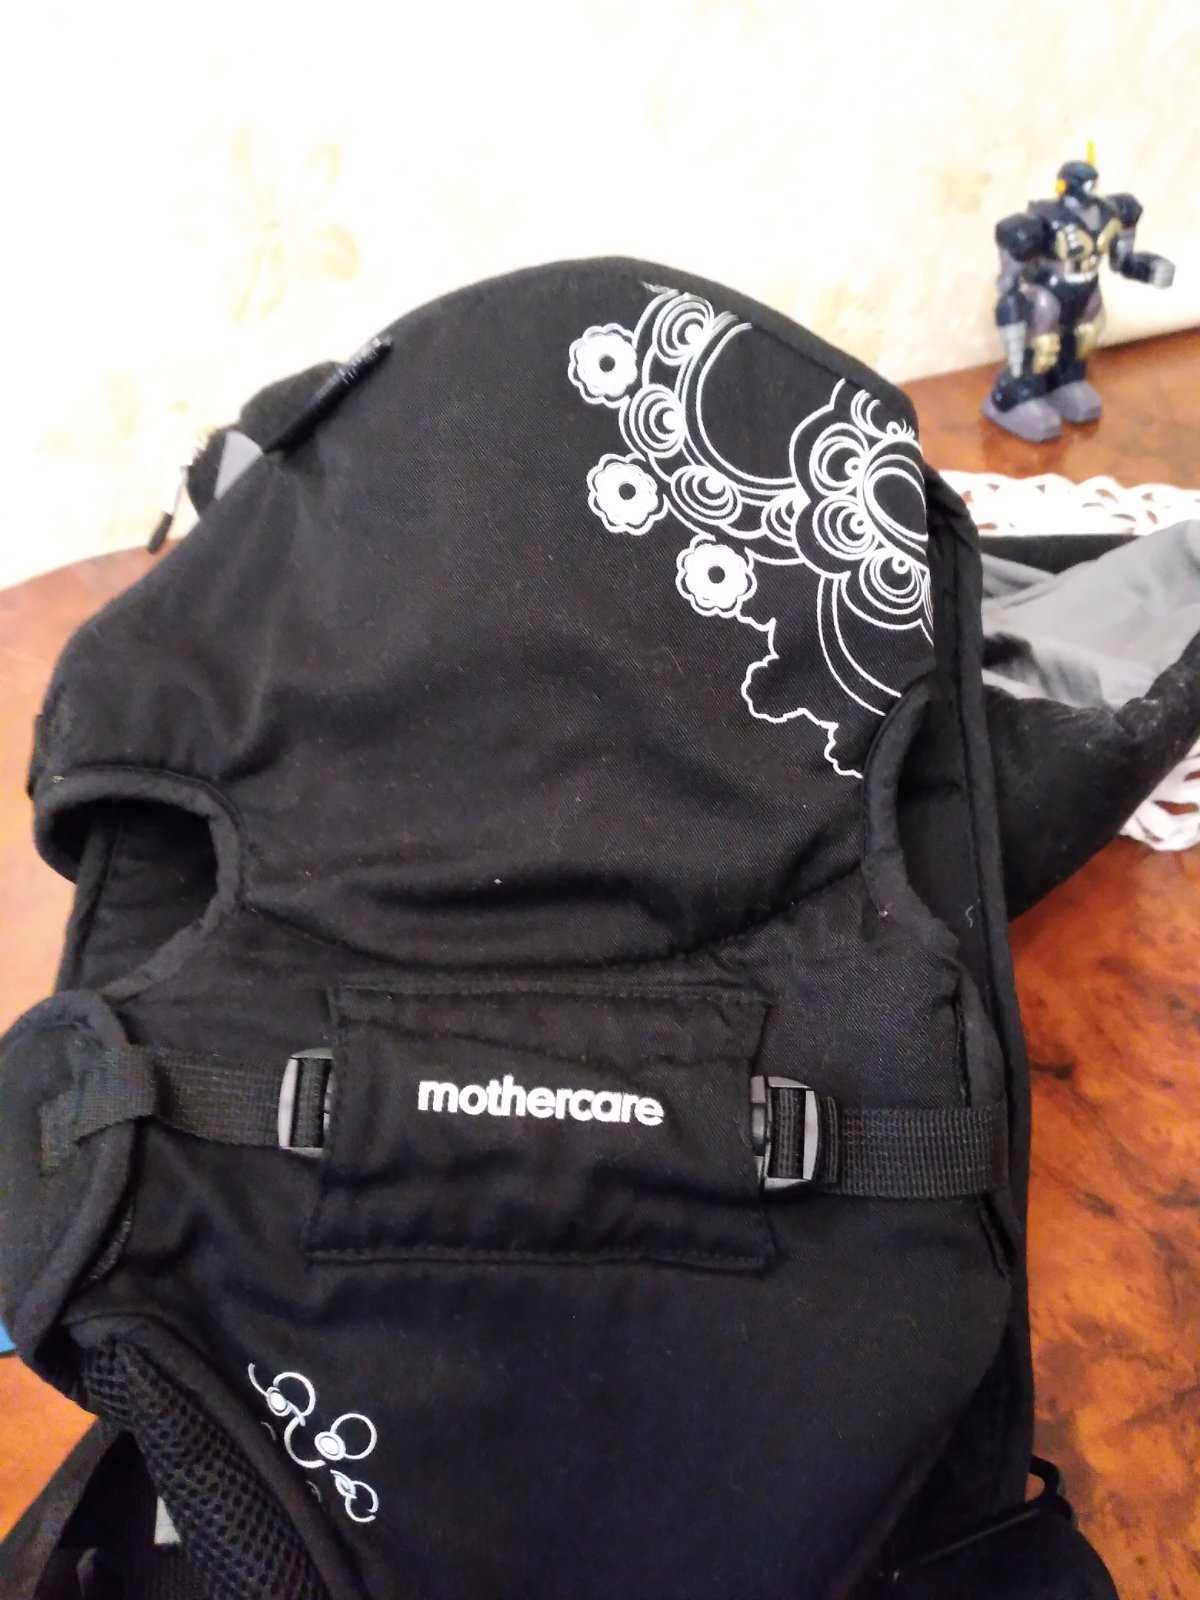 Продам мега-удобный рюкзак-переноску (кенгуру) фирмы Mothercare